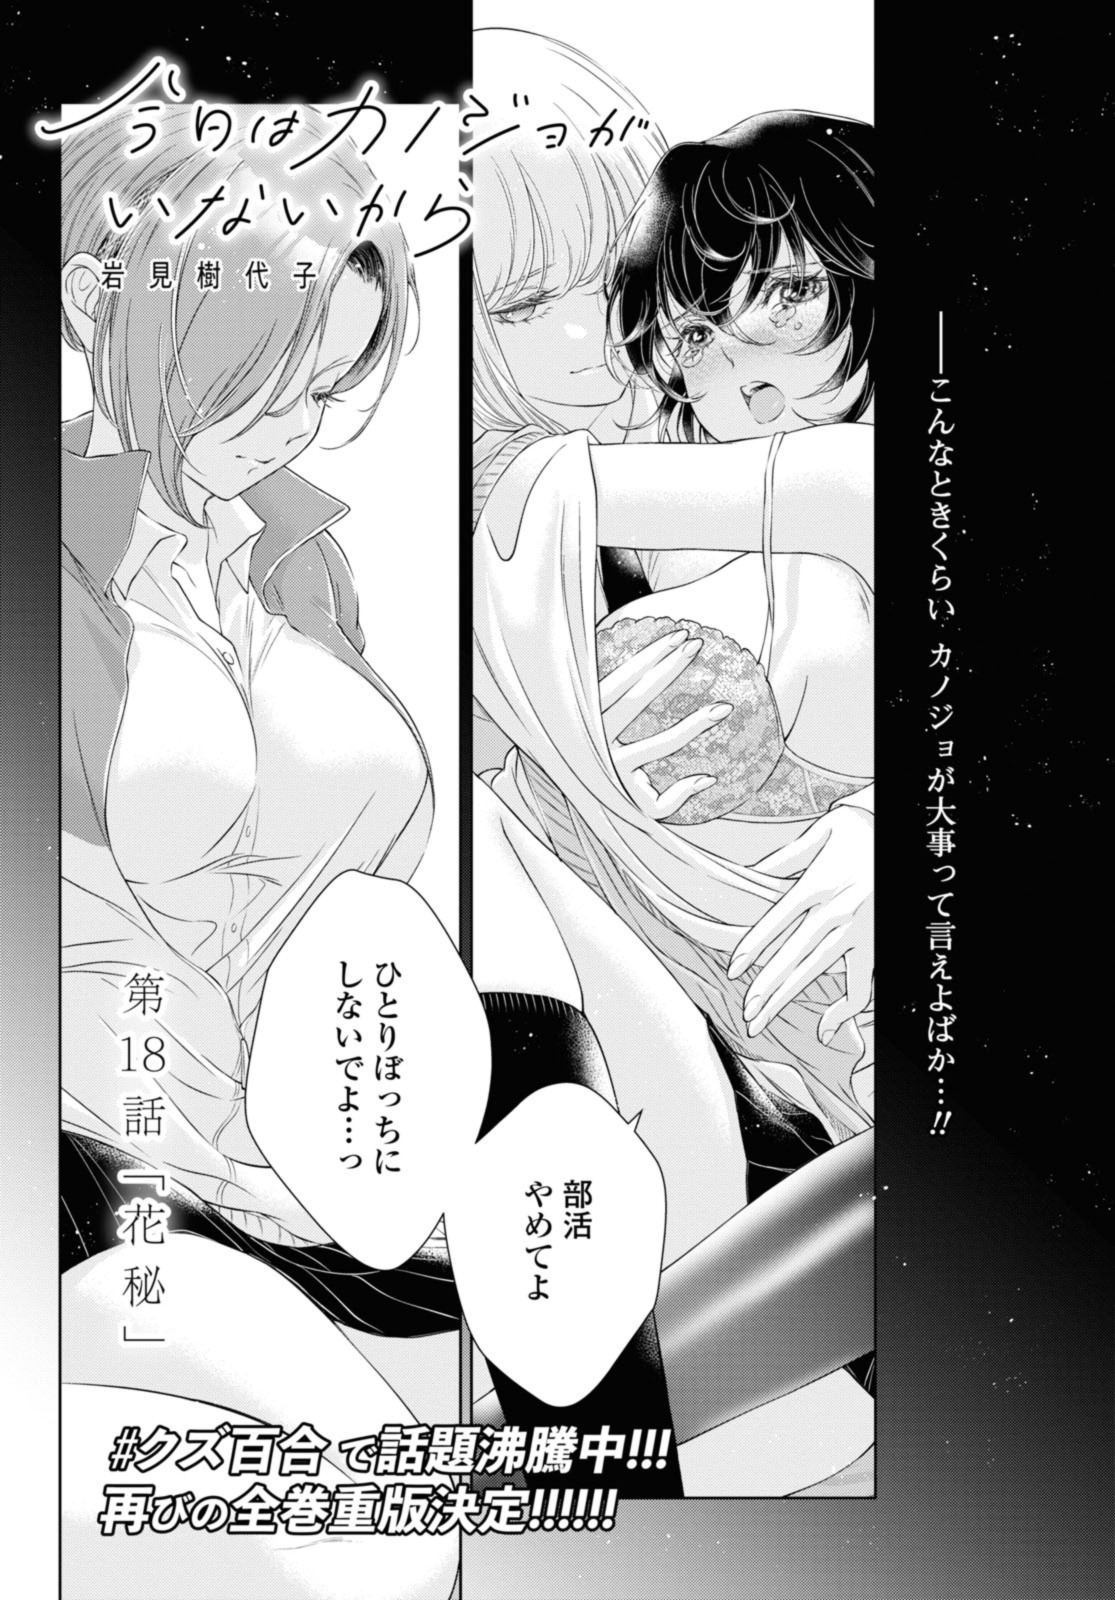 Kyou wa Kanojo ga Inai Kara - Chapter 18.1 - Page 1